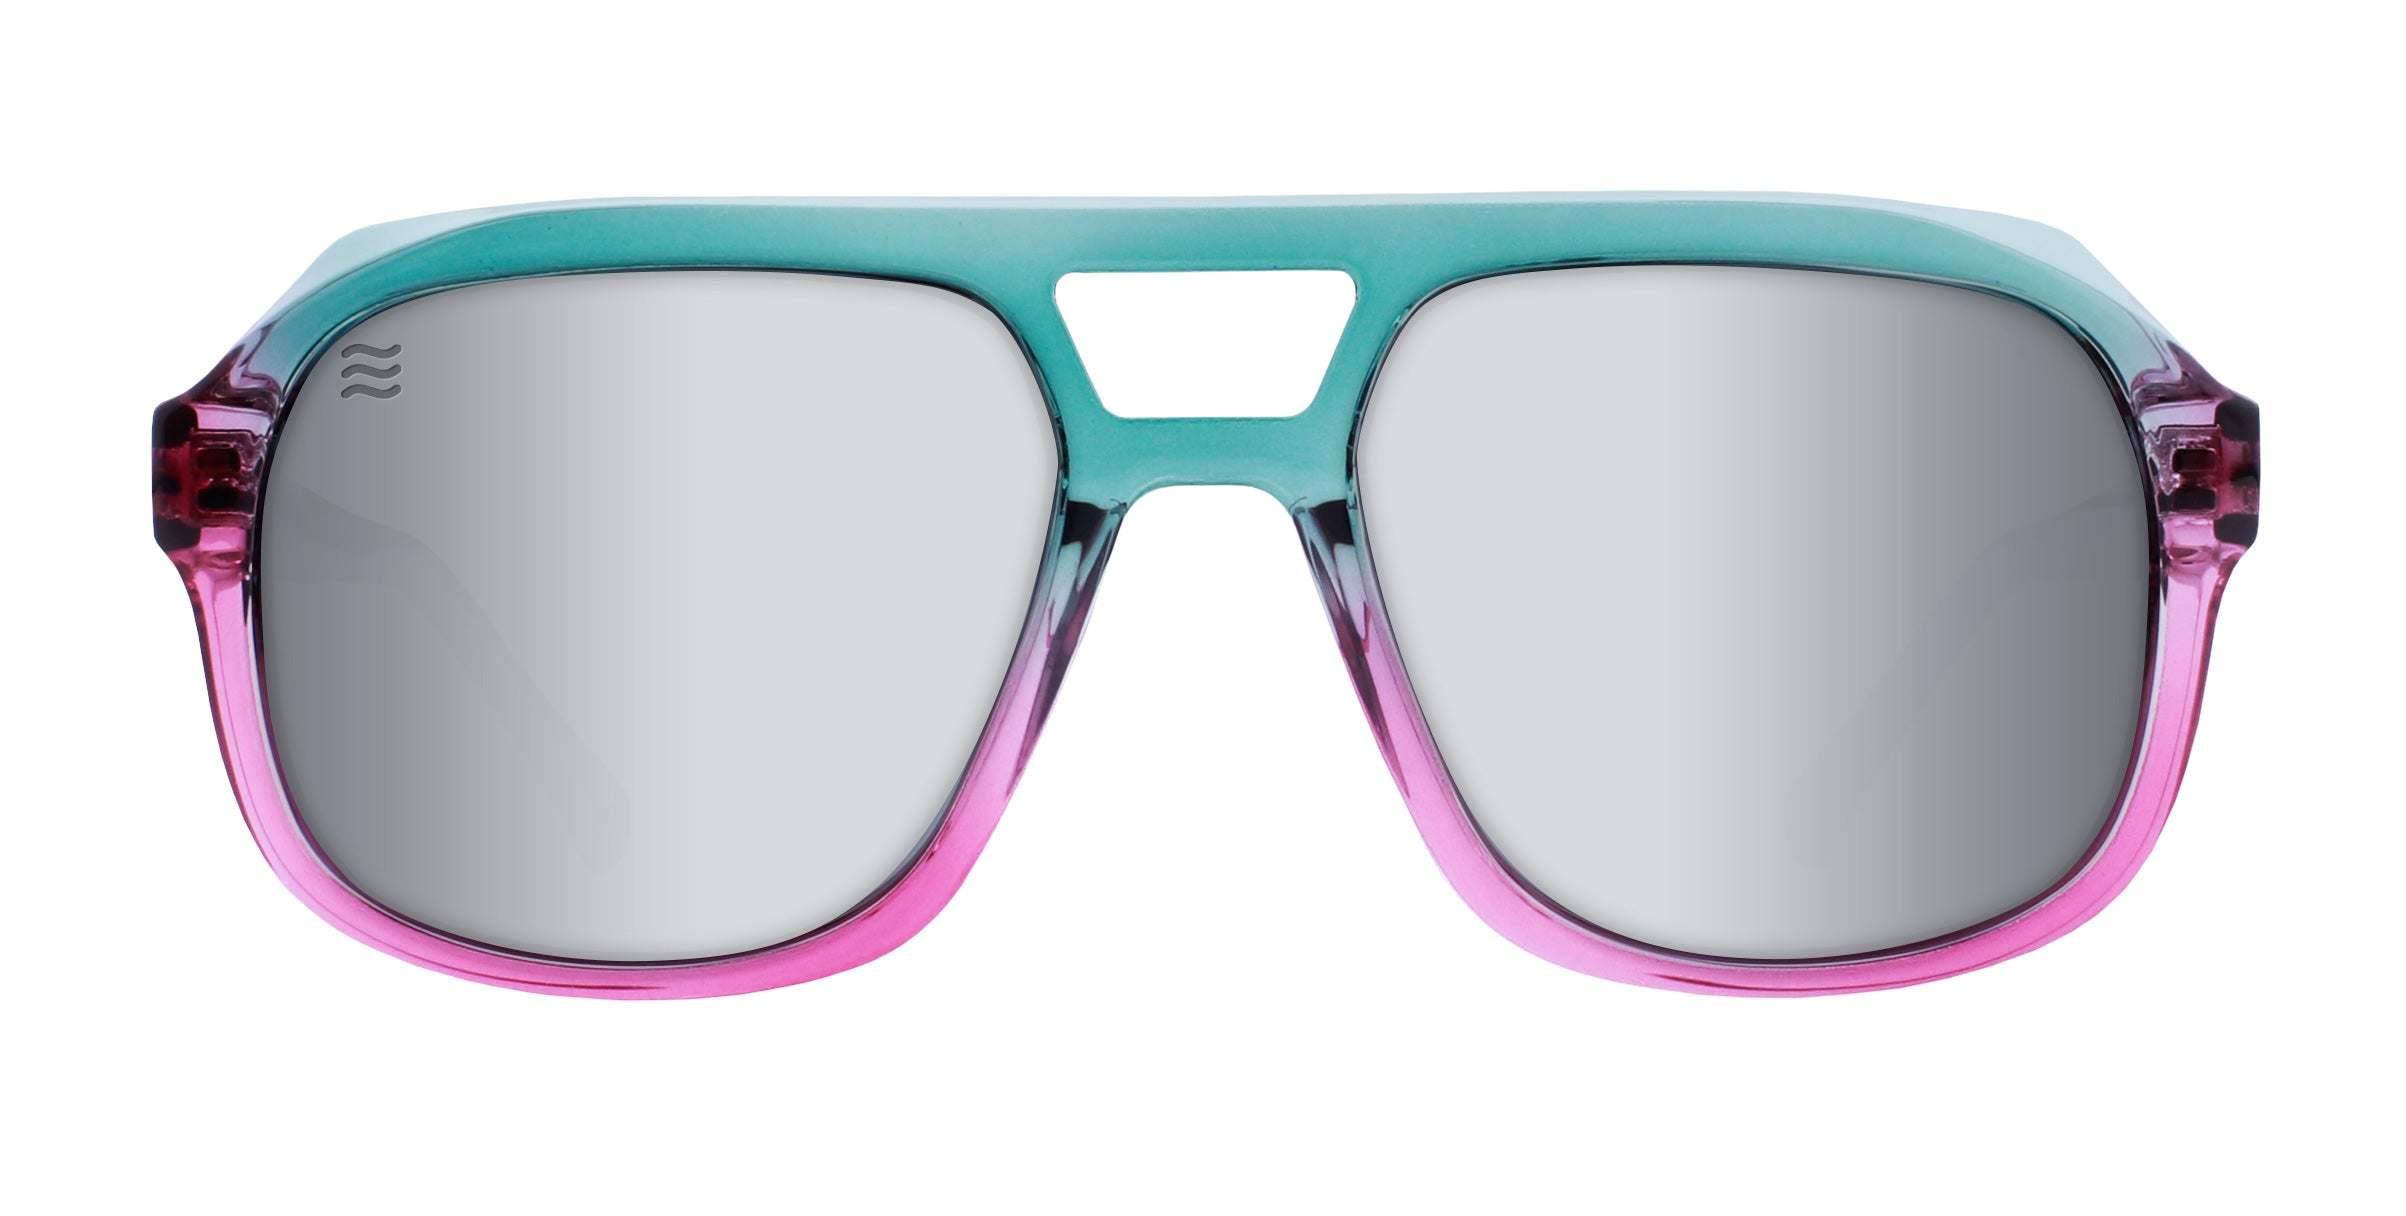 Eyewear® | Polarized, On-Trend, Affordable Sunglasses